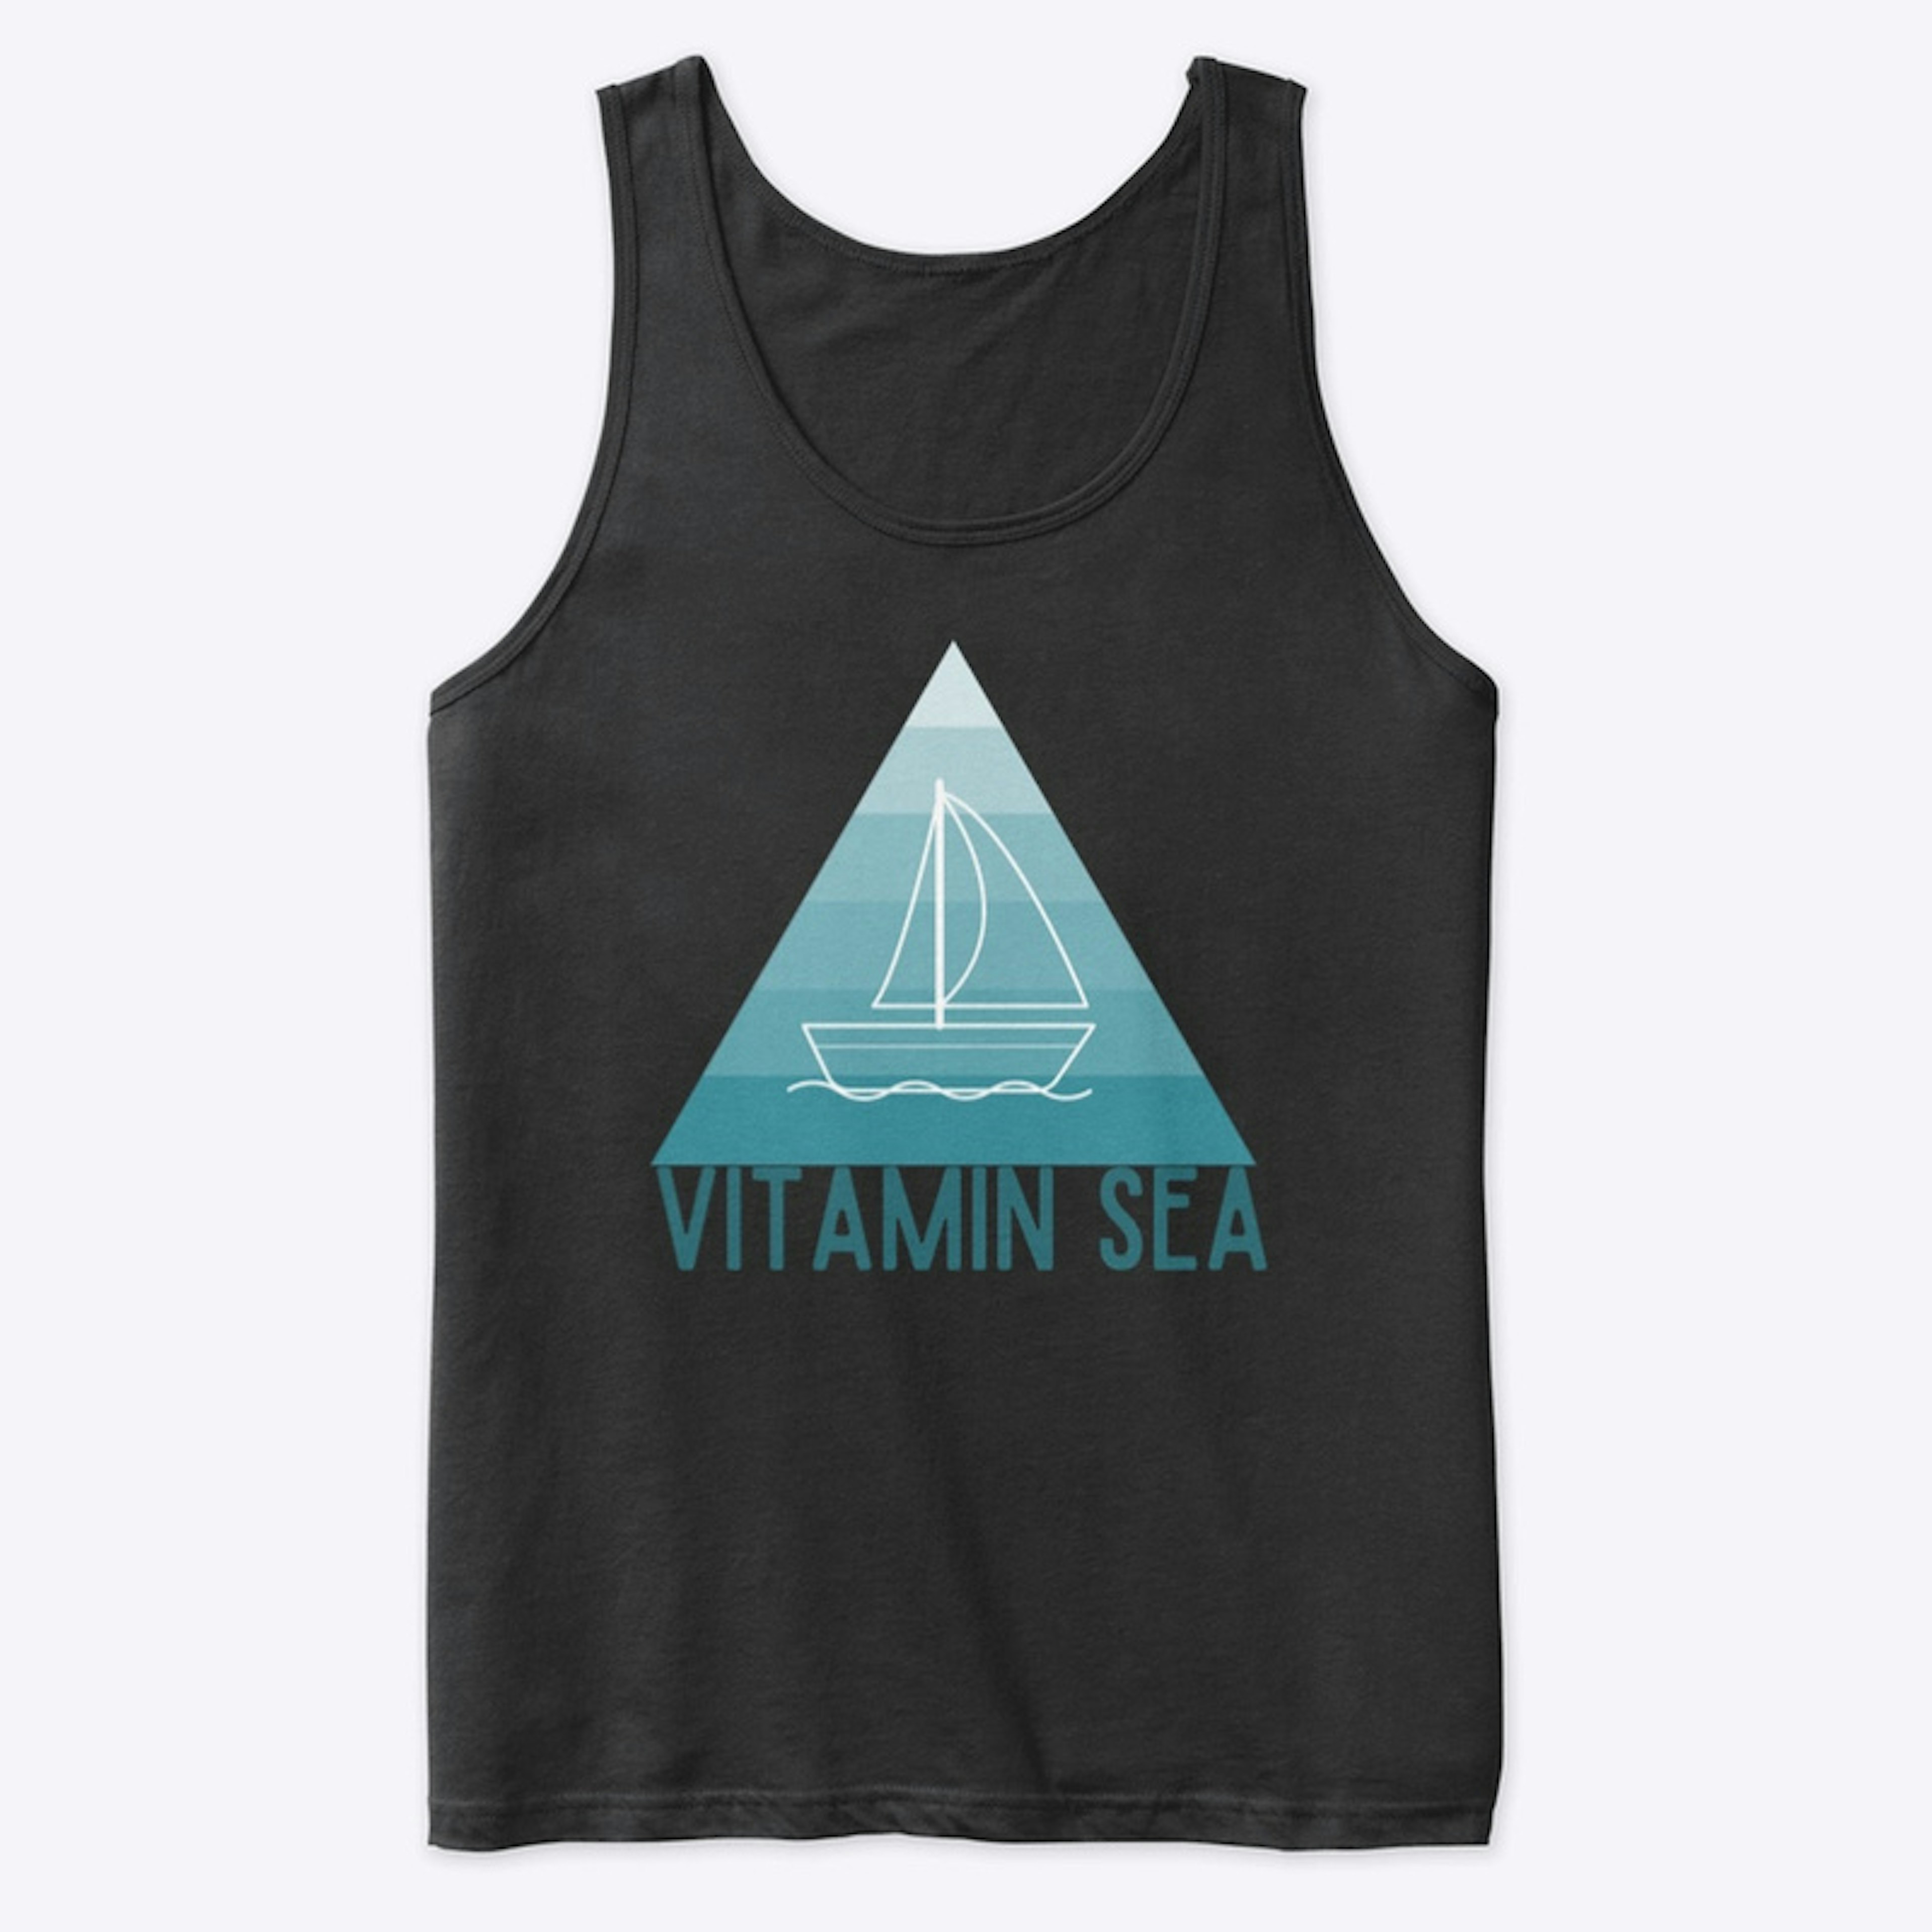 Vitamin "Sea"